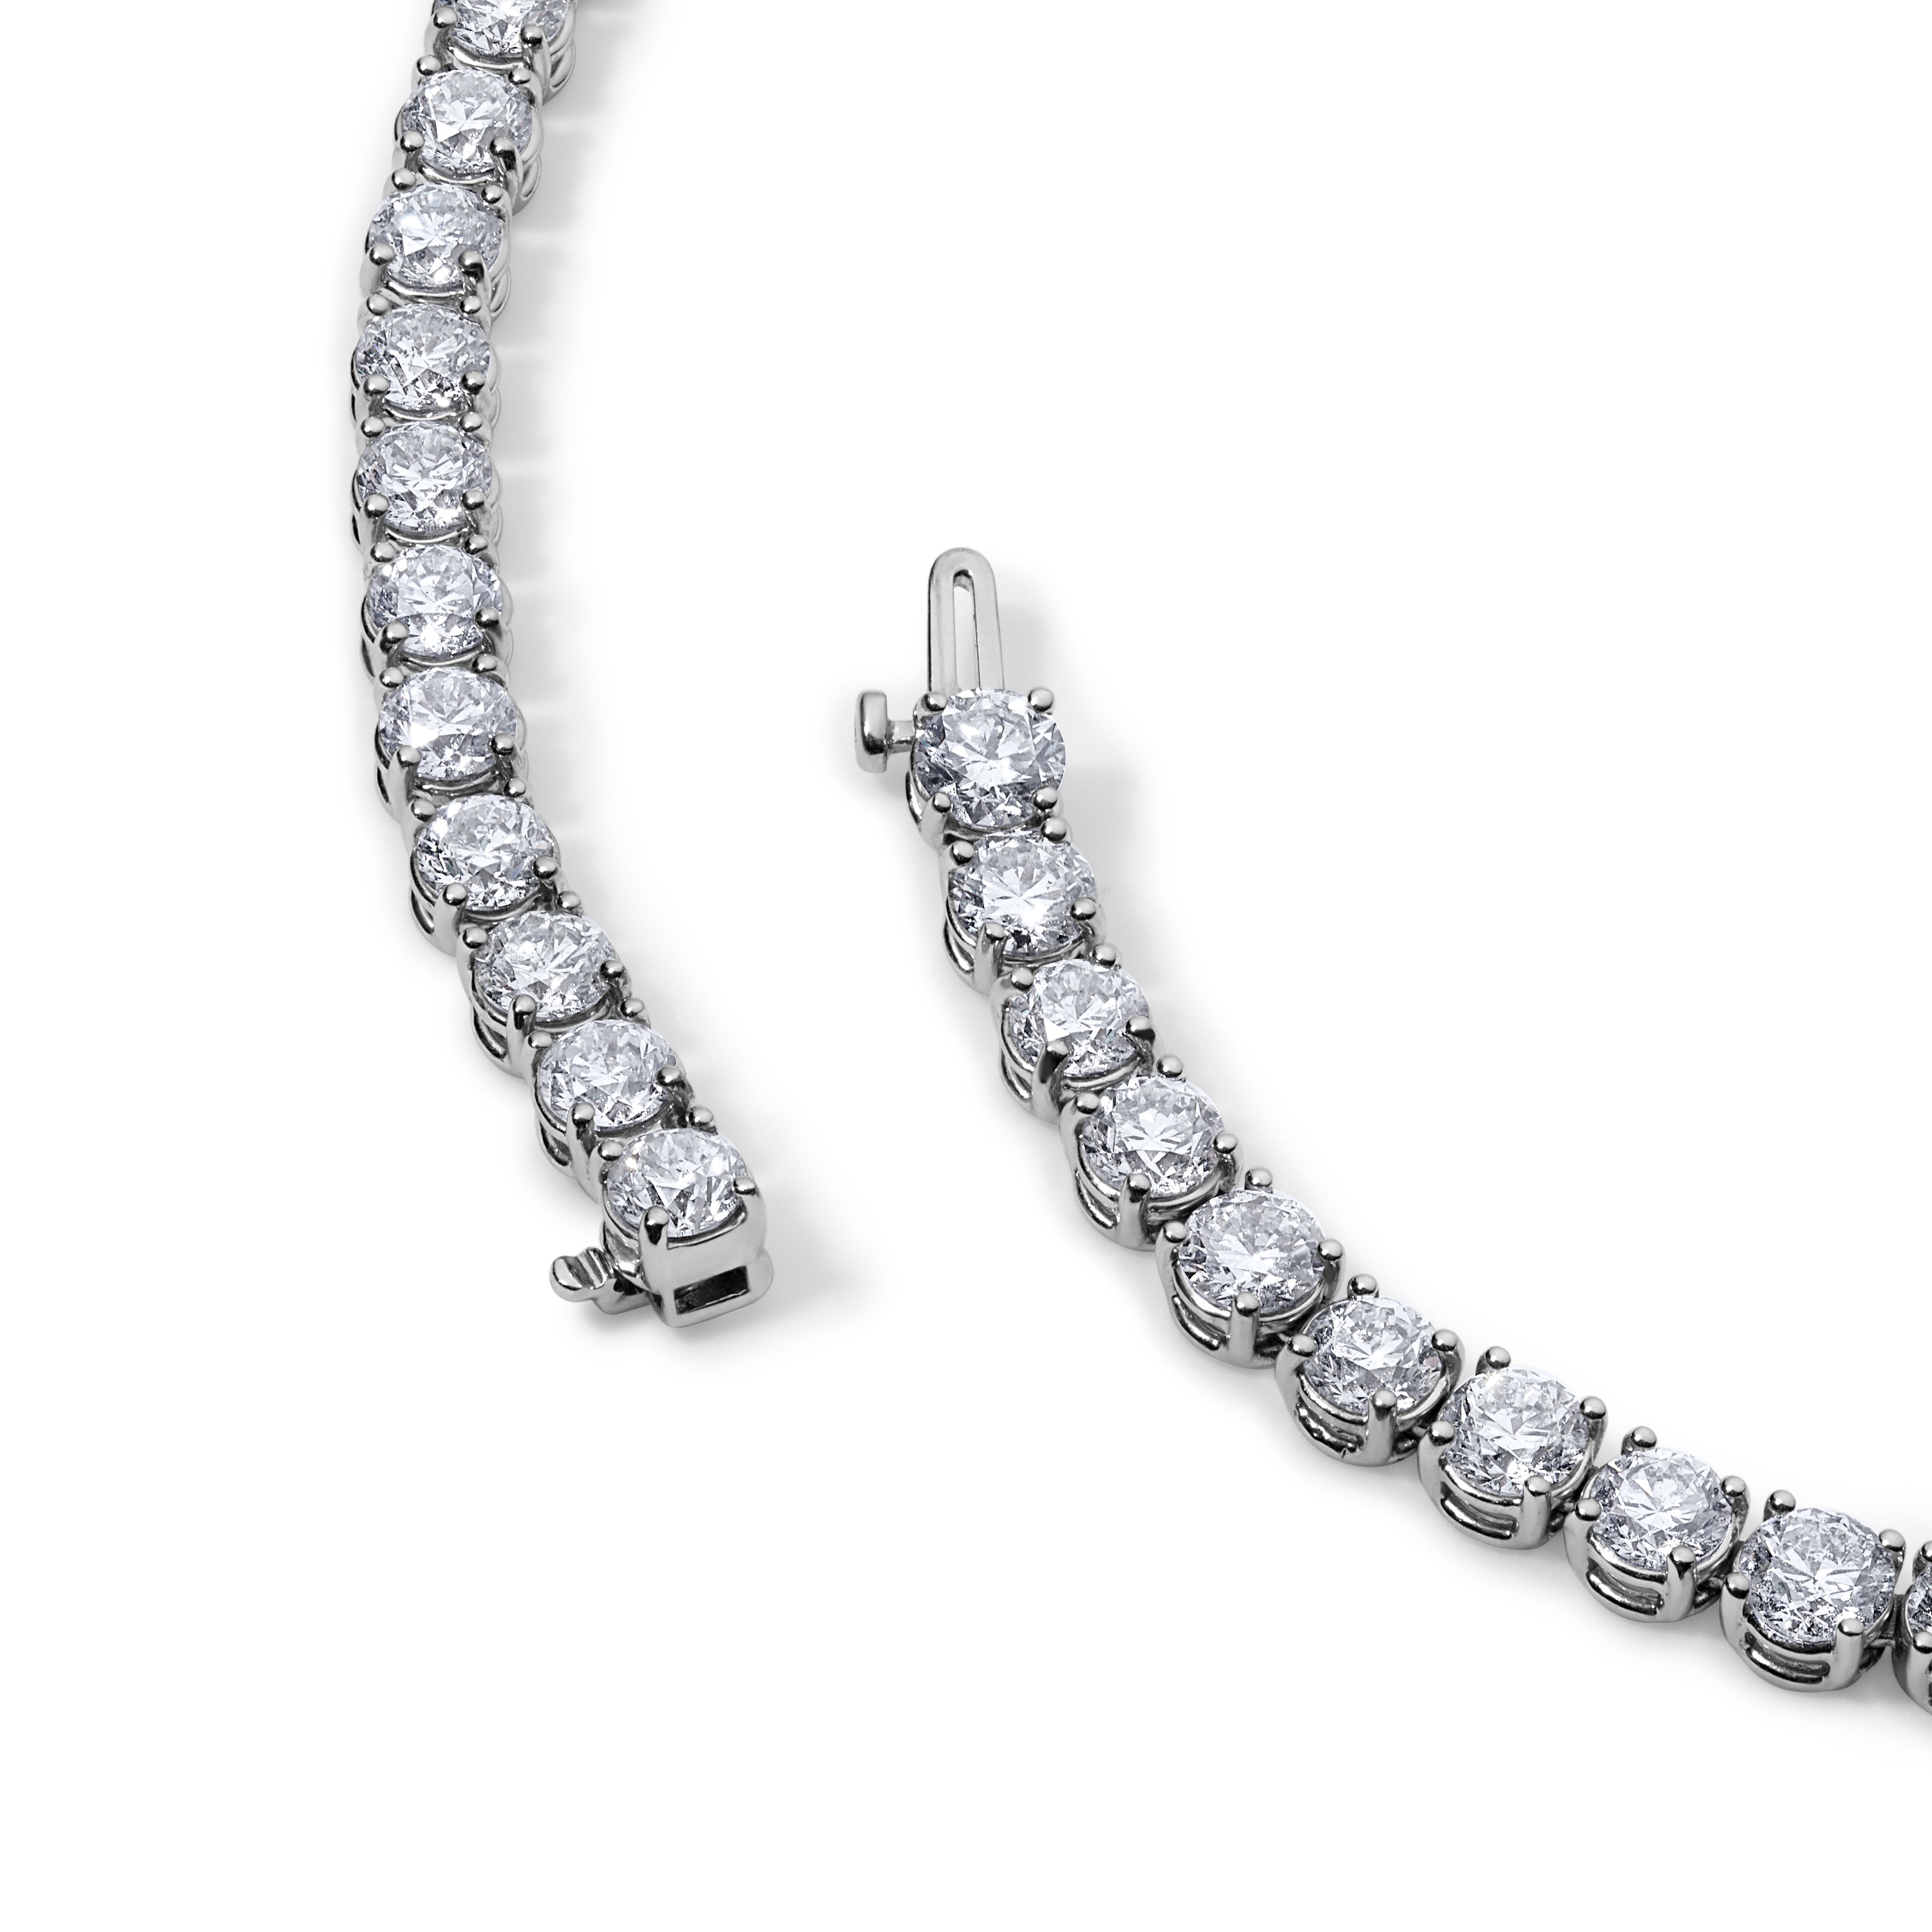 35CT Round Diamond Tennis Necklace